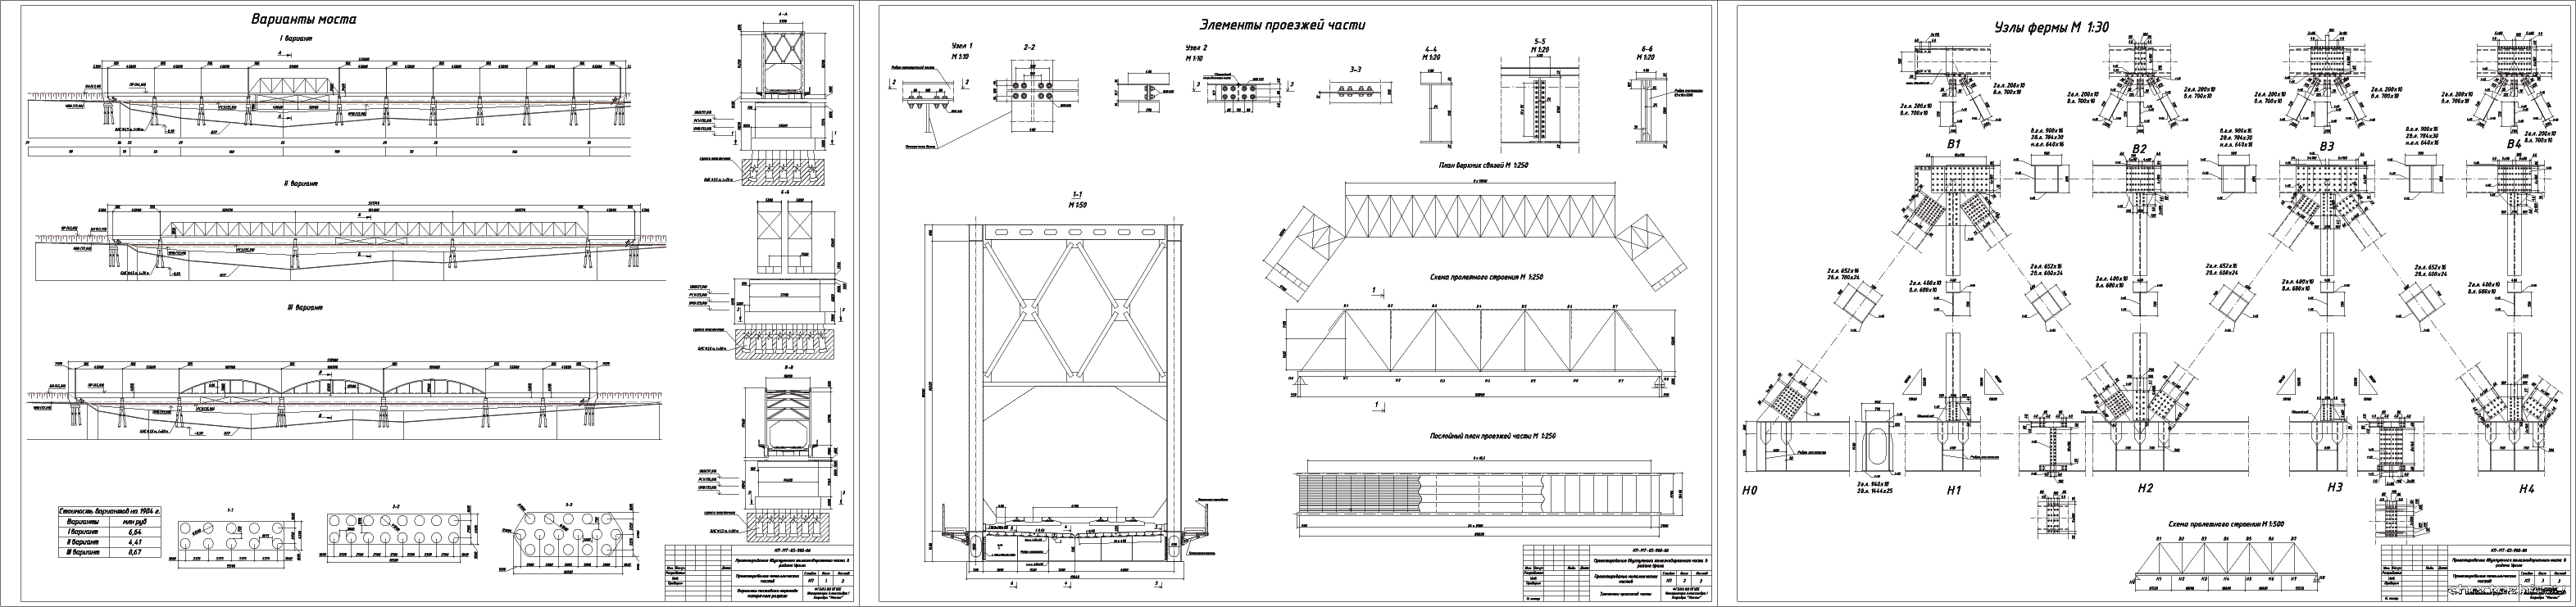 Курсовой проект - Проектирование металлического двухпутного железнодорожного моста в районе Урала